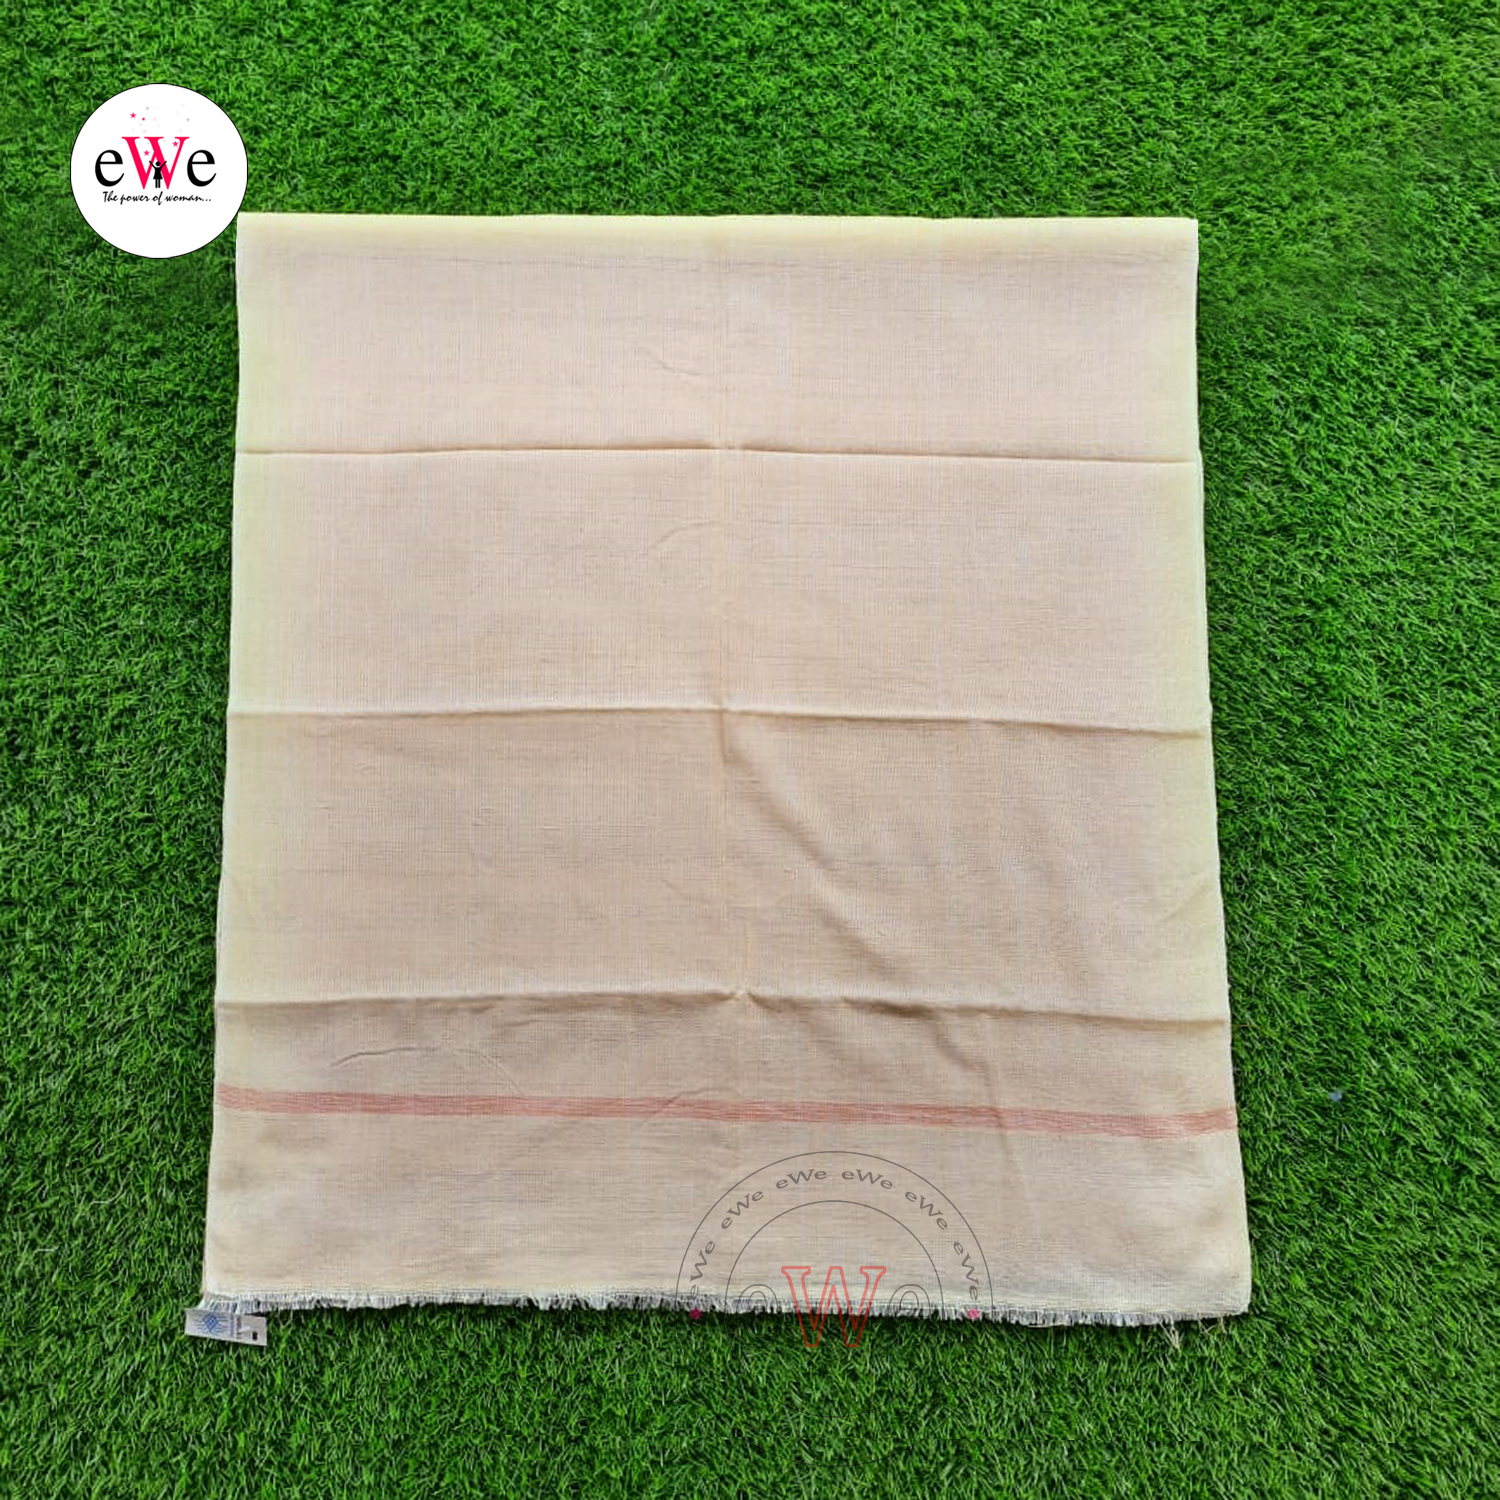 Handloom Off-white Cotton Bath Towels  Combo Set Pack of 2 Pieces (146cm x 67cm)